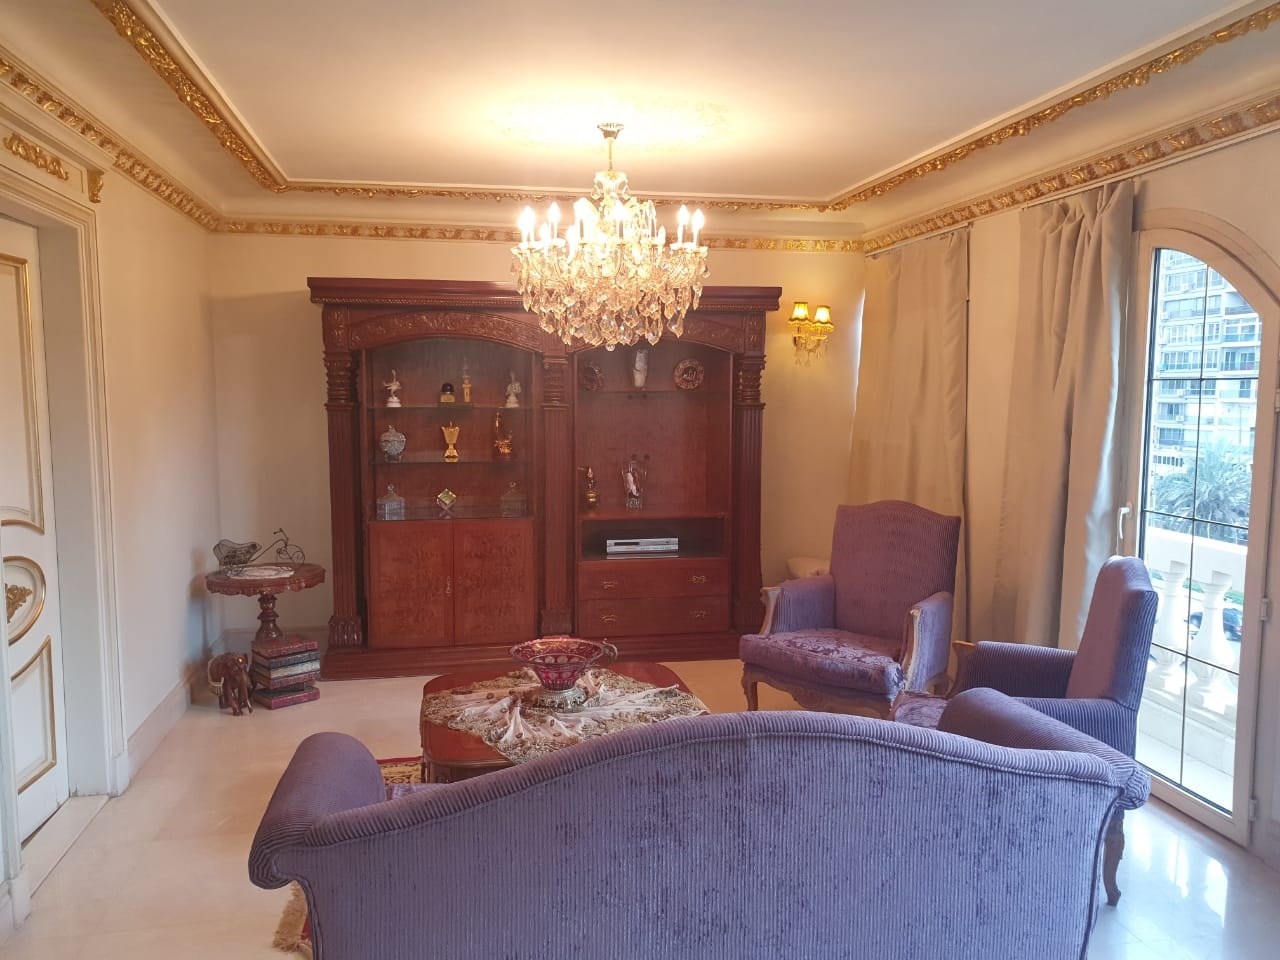 Special Apartment 350 M For Sale At El Thawra Street Nasr City شقة مميزة لقطة 350 متر للبيع بشارع الثورة مدينة نصر.jpg